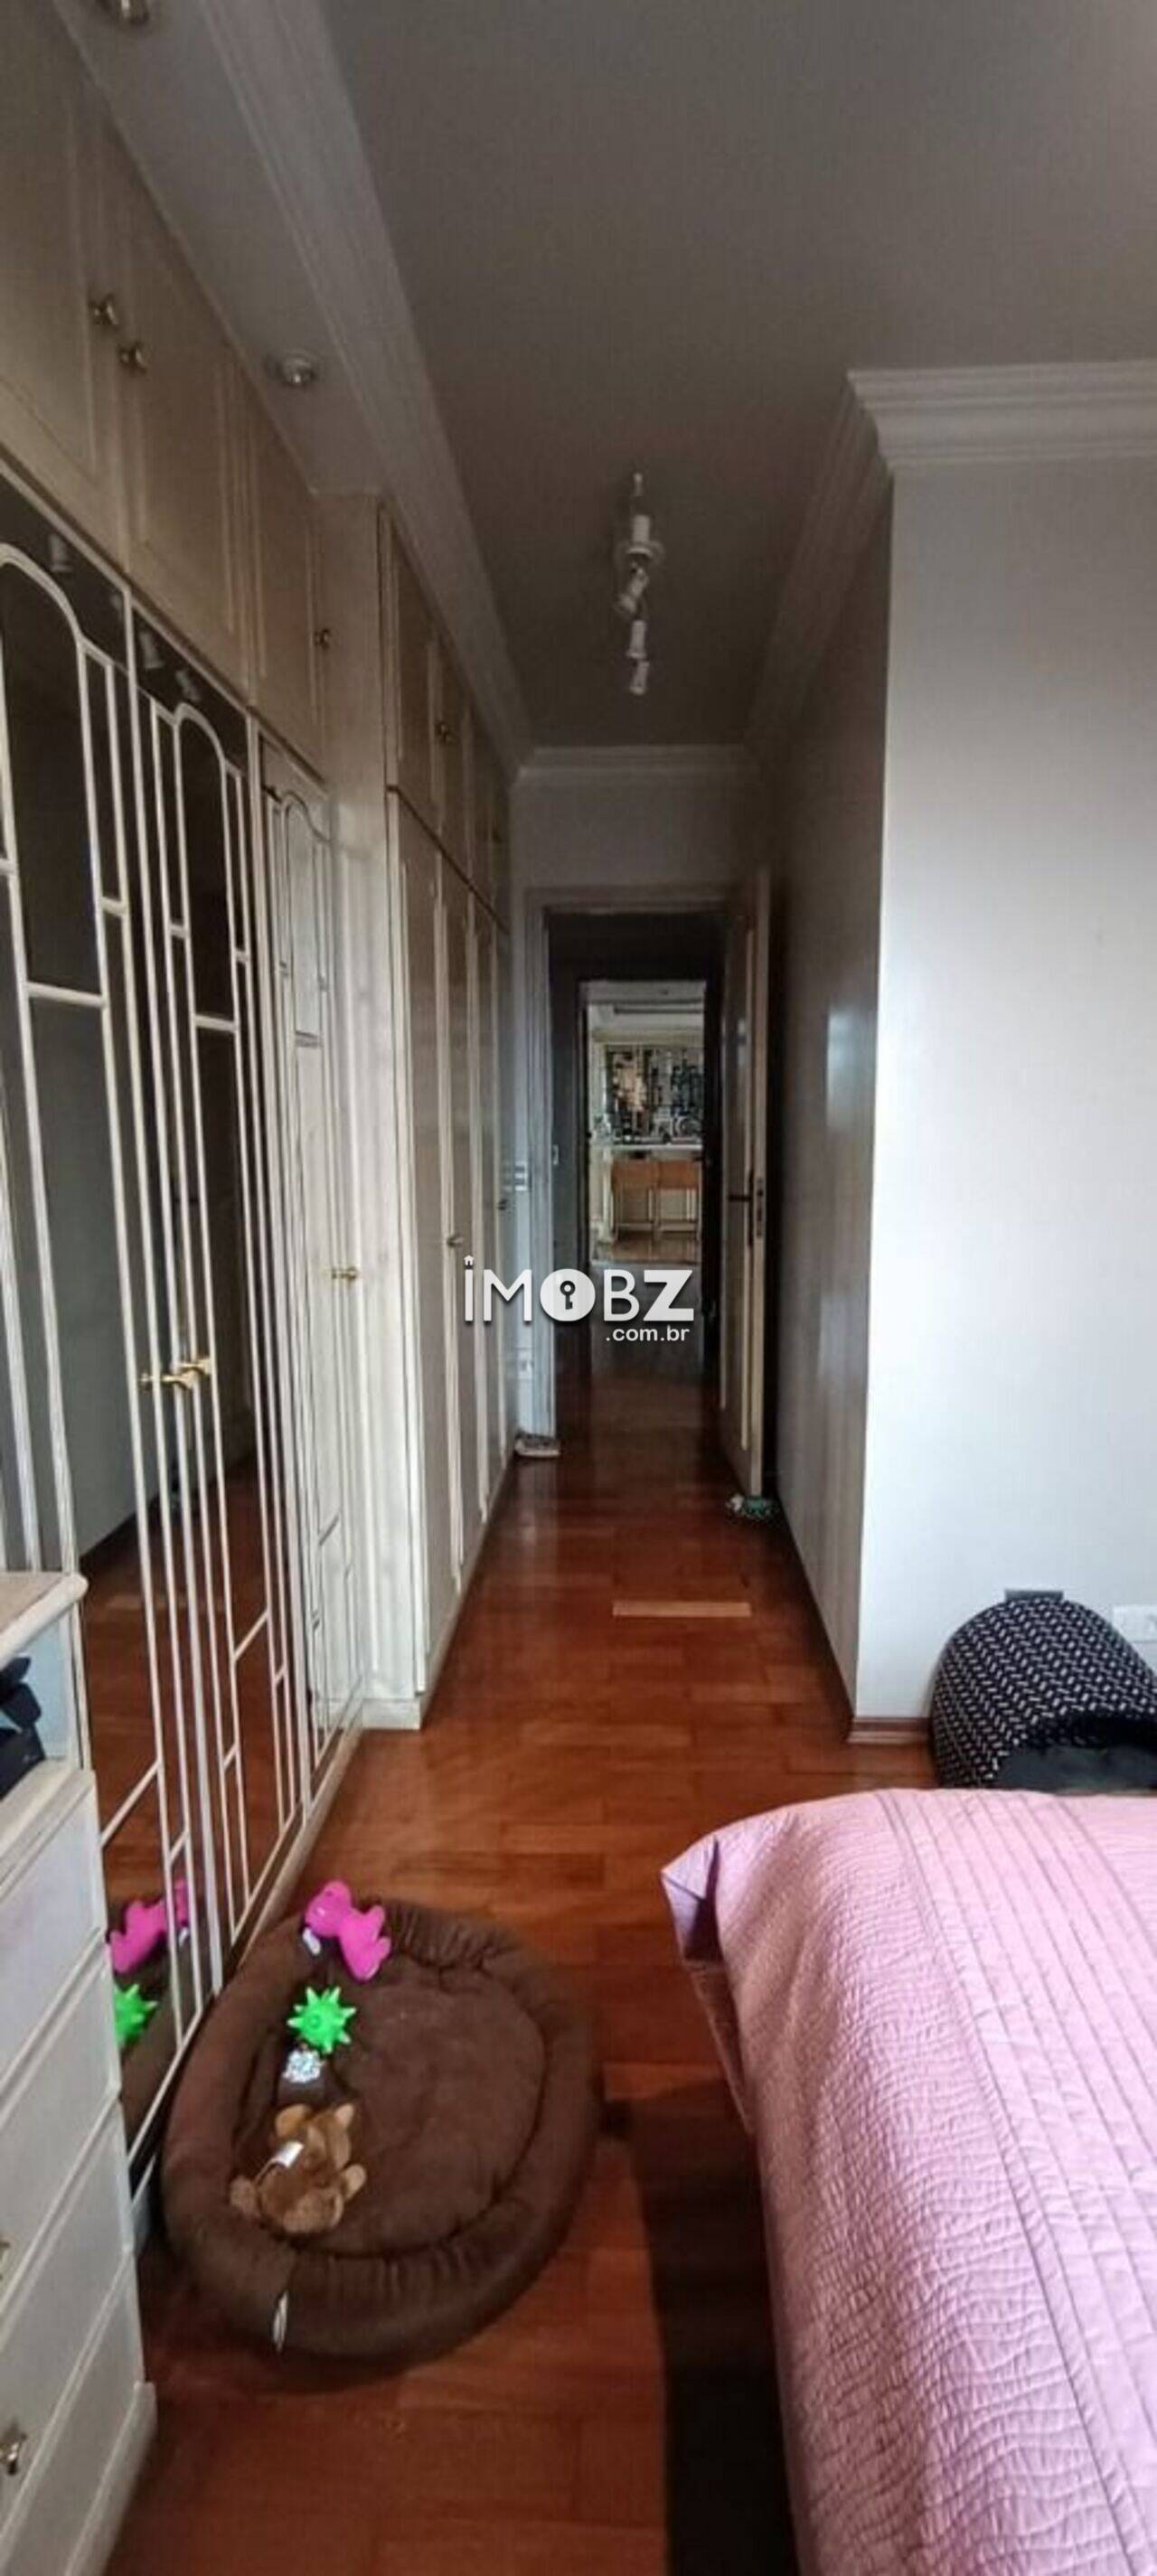 [NOVO] Apartamento à venda no Condomínio Edifício Marília Di Francesco -  Rua Bento de Faria, 50 - Bosque da Saúde - São Paulo - SP - CEP 04151-020